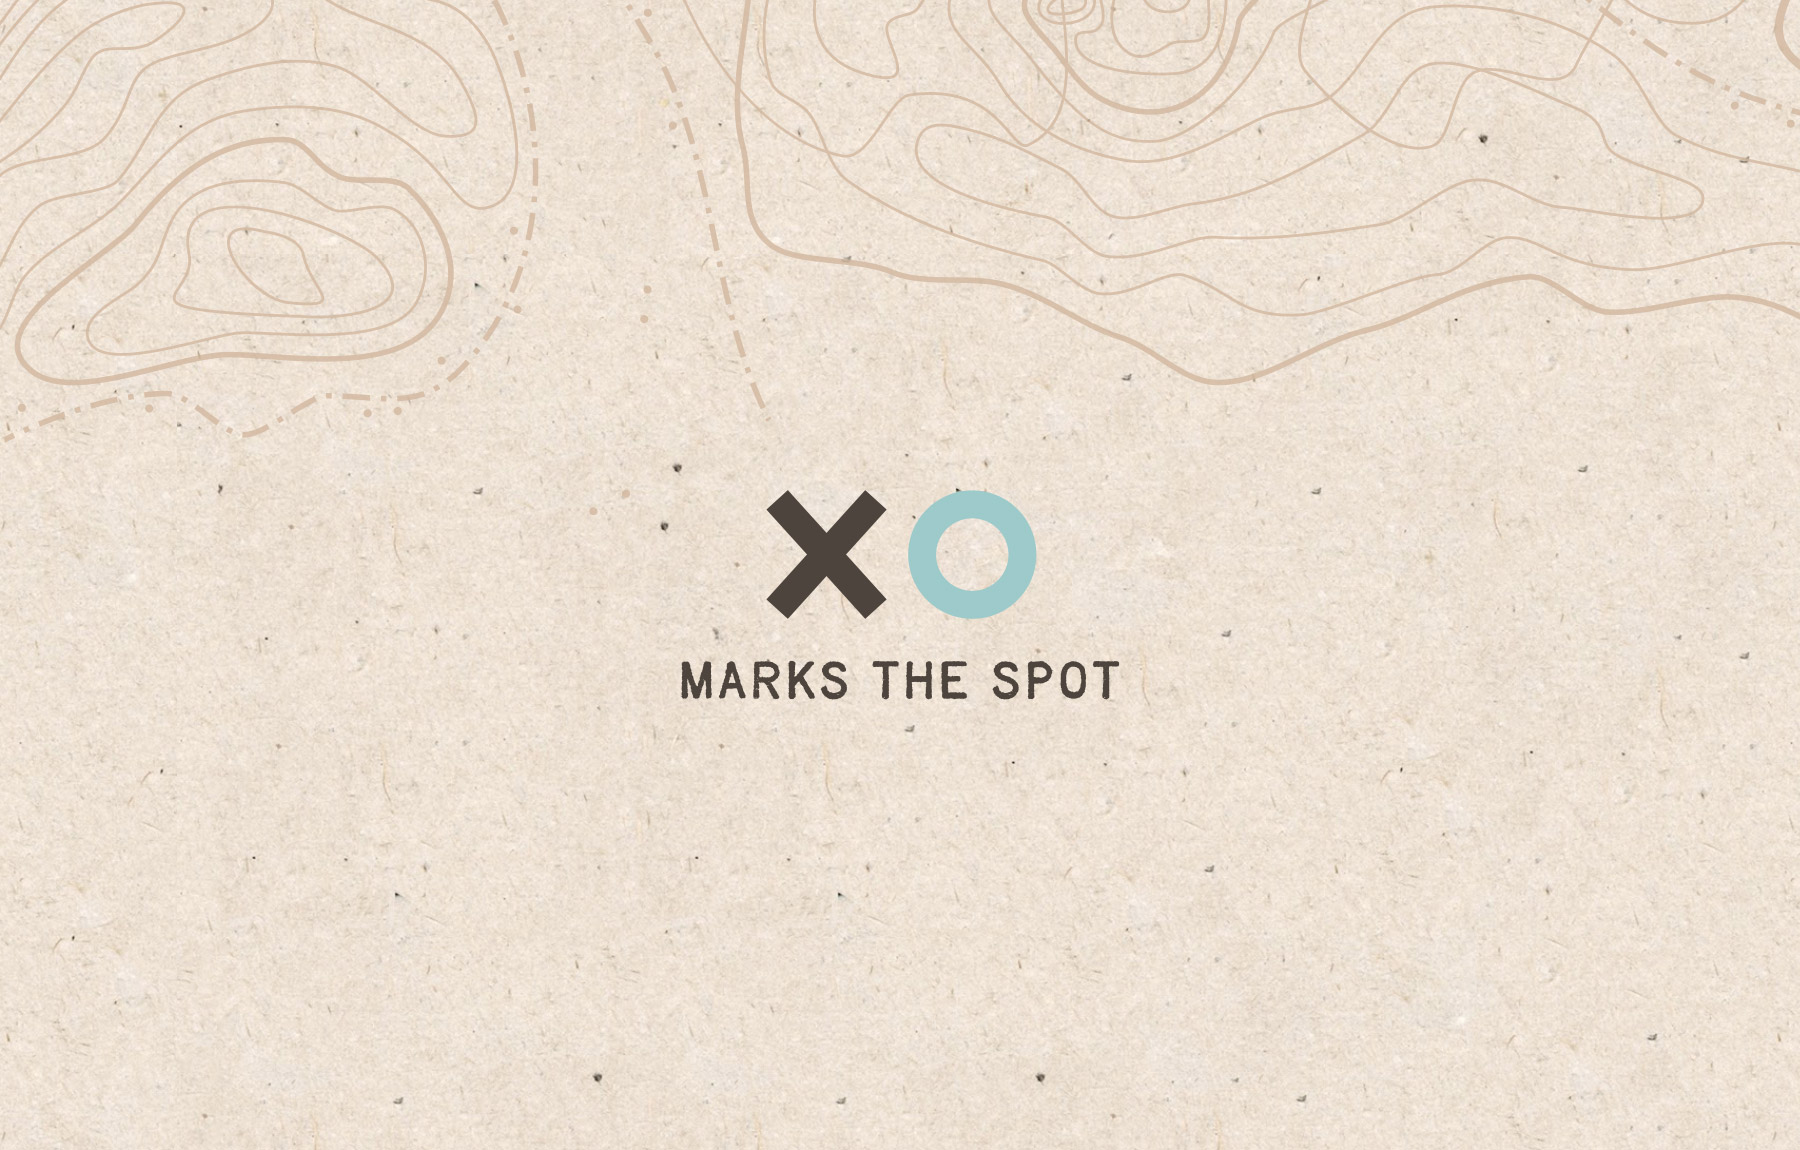 XO marks the spot